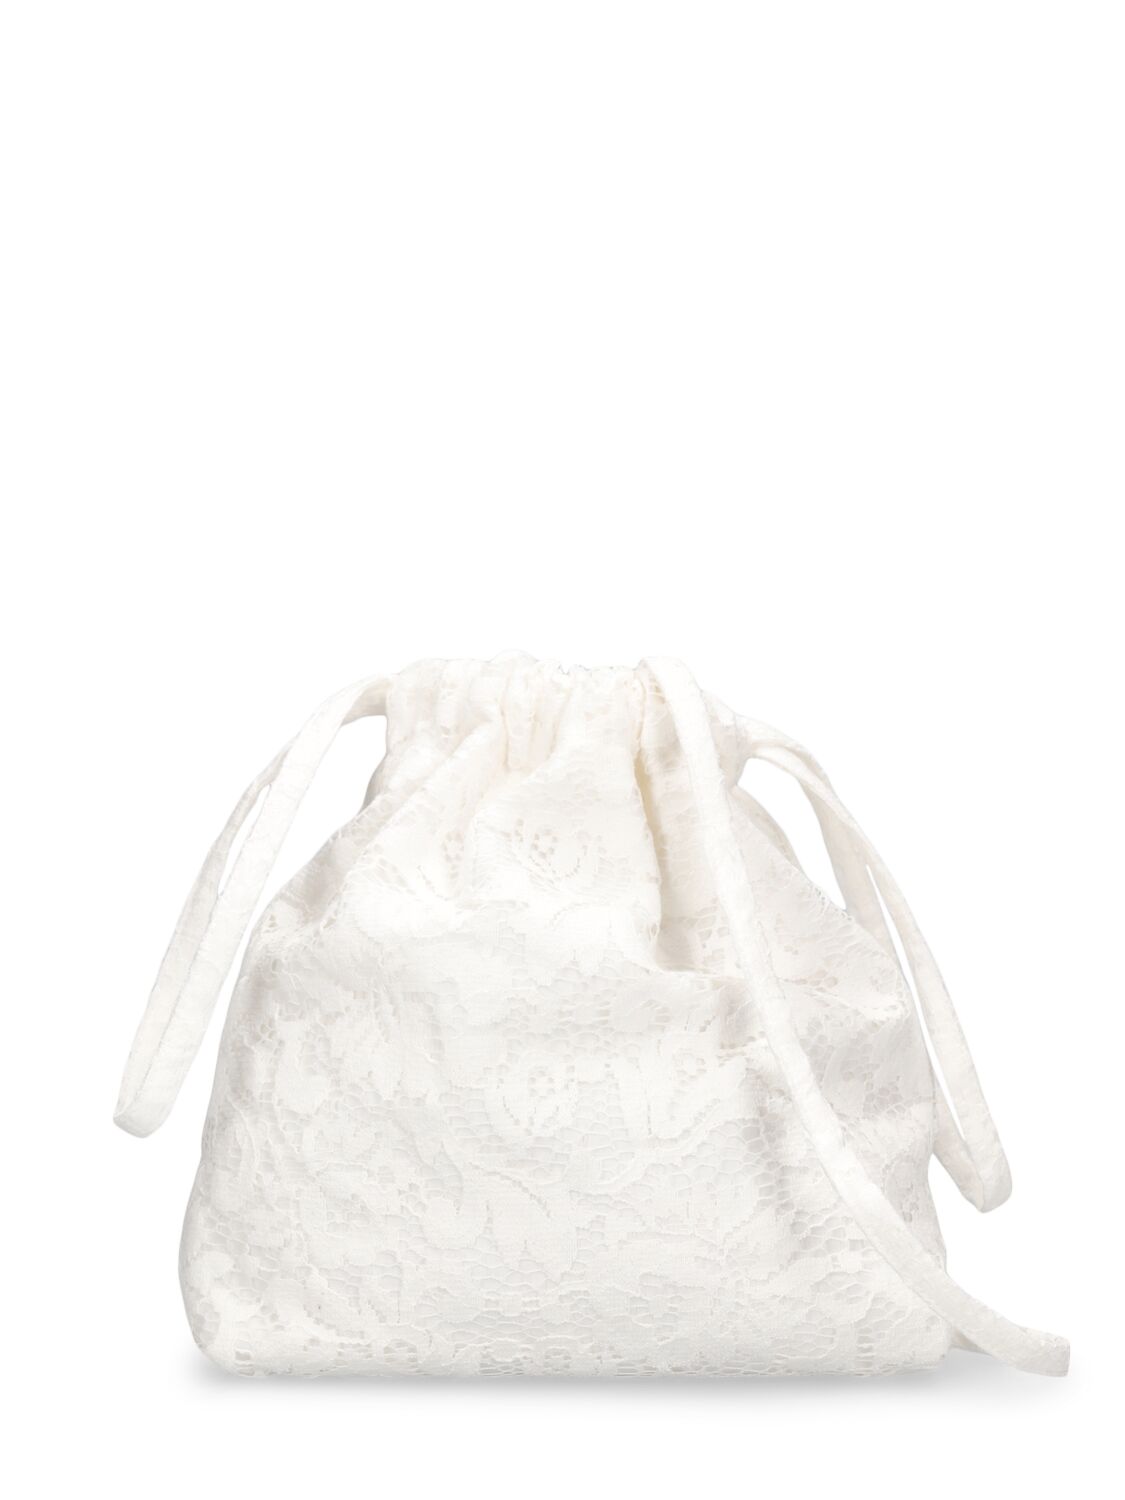 Image of Cotton Shoulder Bag